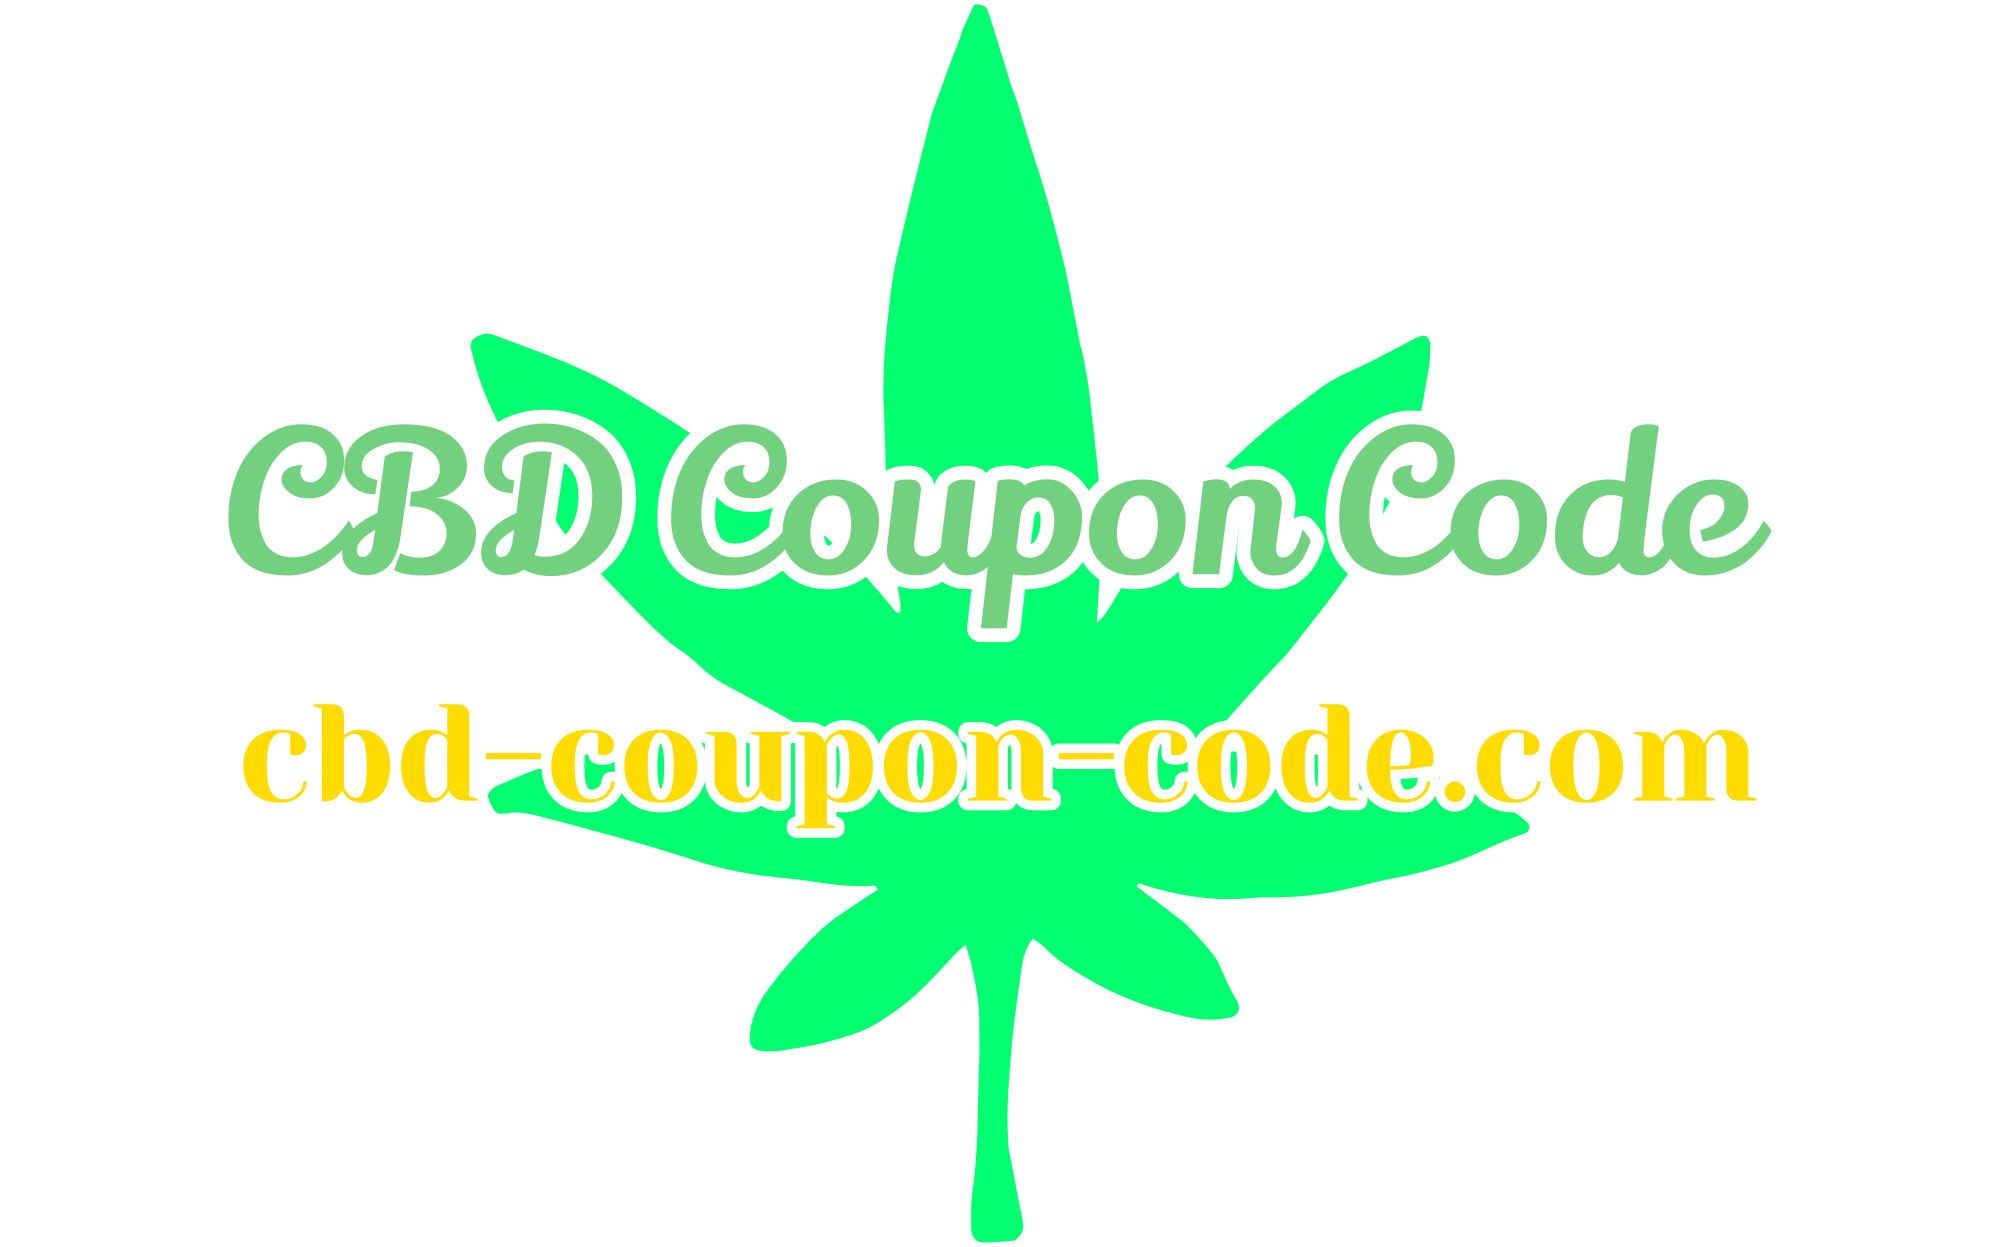 cbd-coupon-code